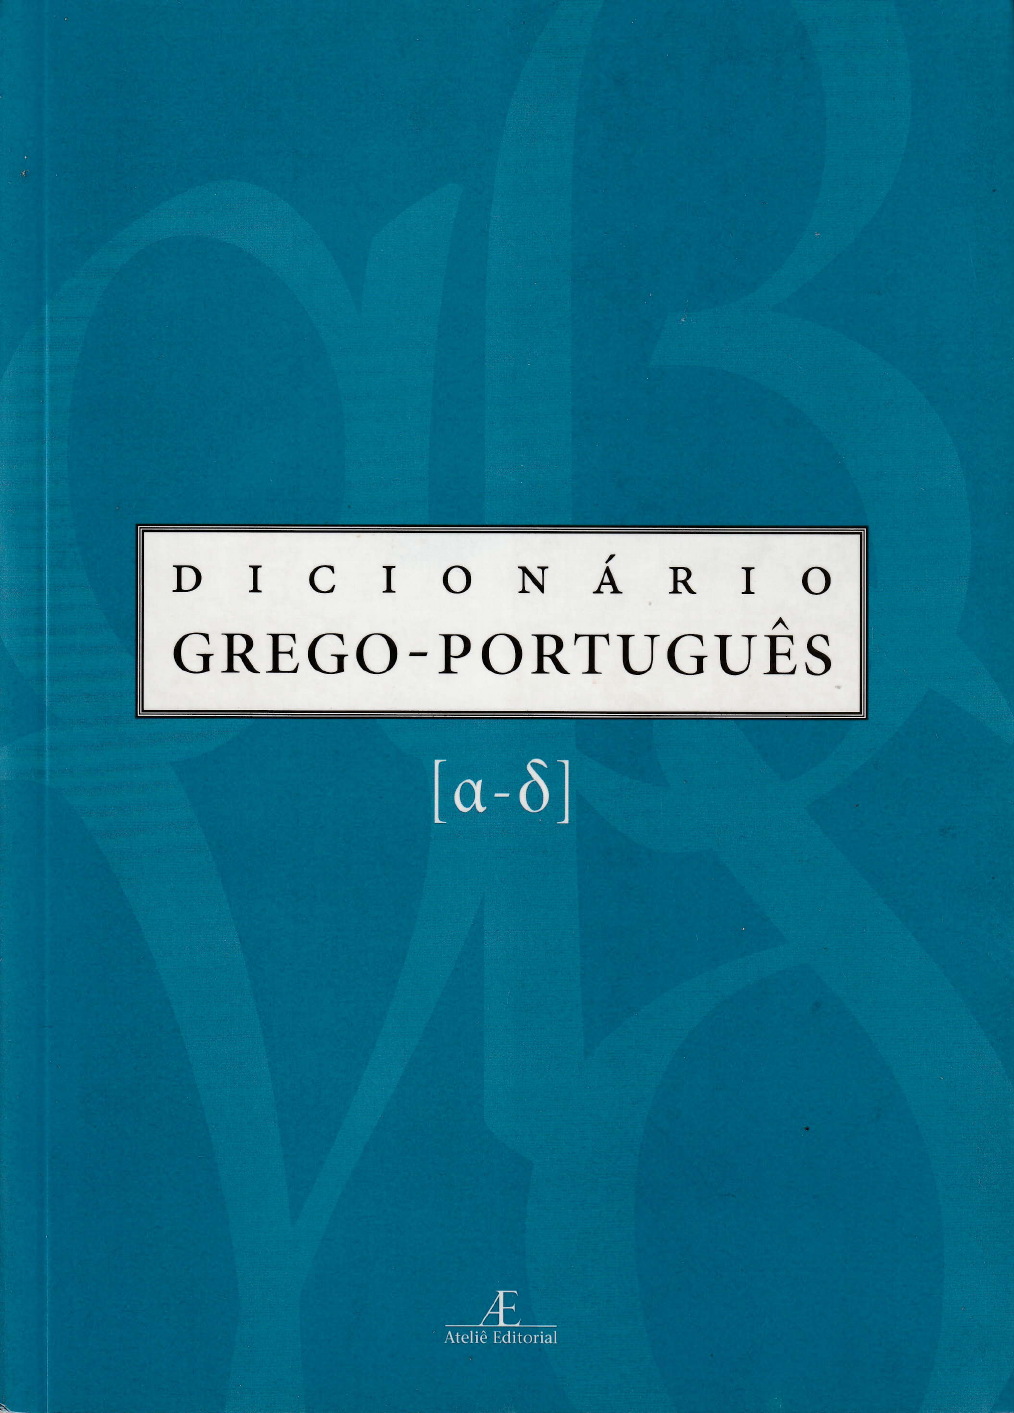 Sereno - Dicio, Dicionário Online de Português